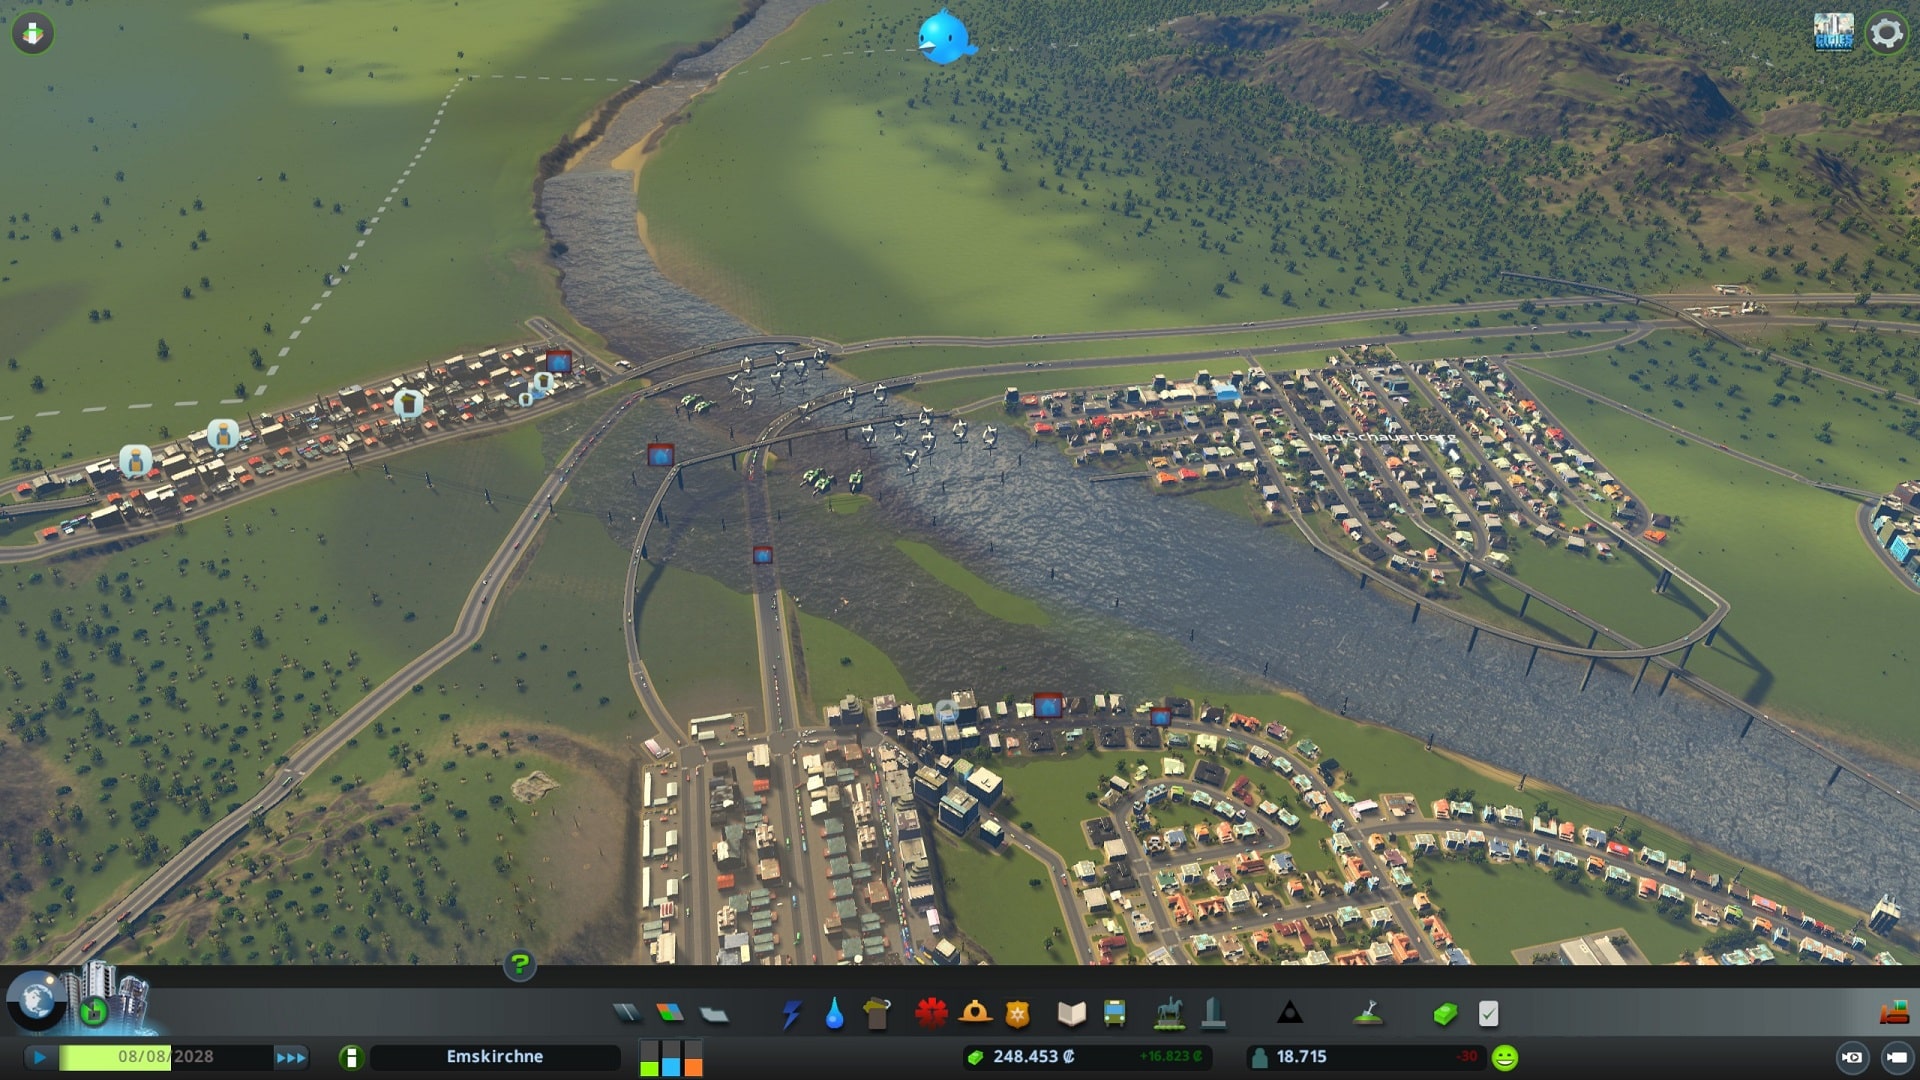 Dargestellt ist ein Screenshot aus der Städtebau-Simulation Cities: Skylines. Zu sehen ist eine kleine Stadt, die sich an einen Fluss schmiegt. Das Wasser des Flusses tritt an vielen Stellen über die Ufer und hat Teile der Stadt unter Wasser gesetzt. 